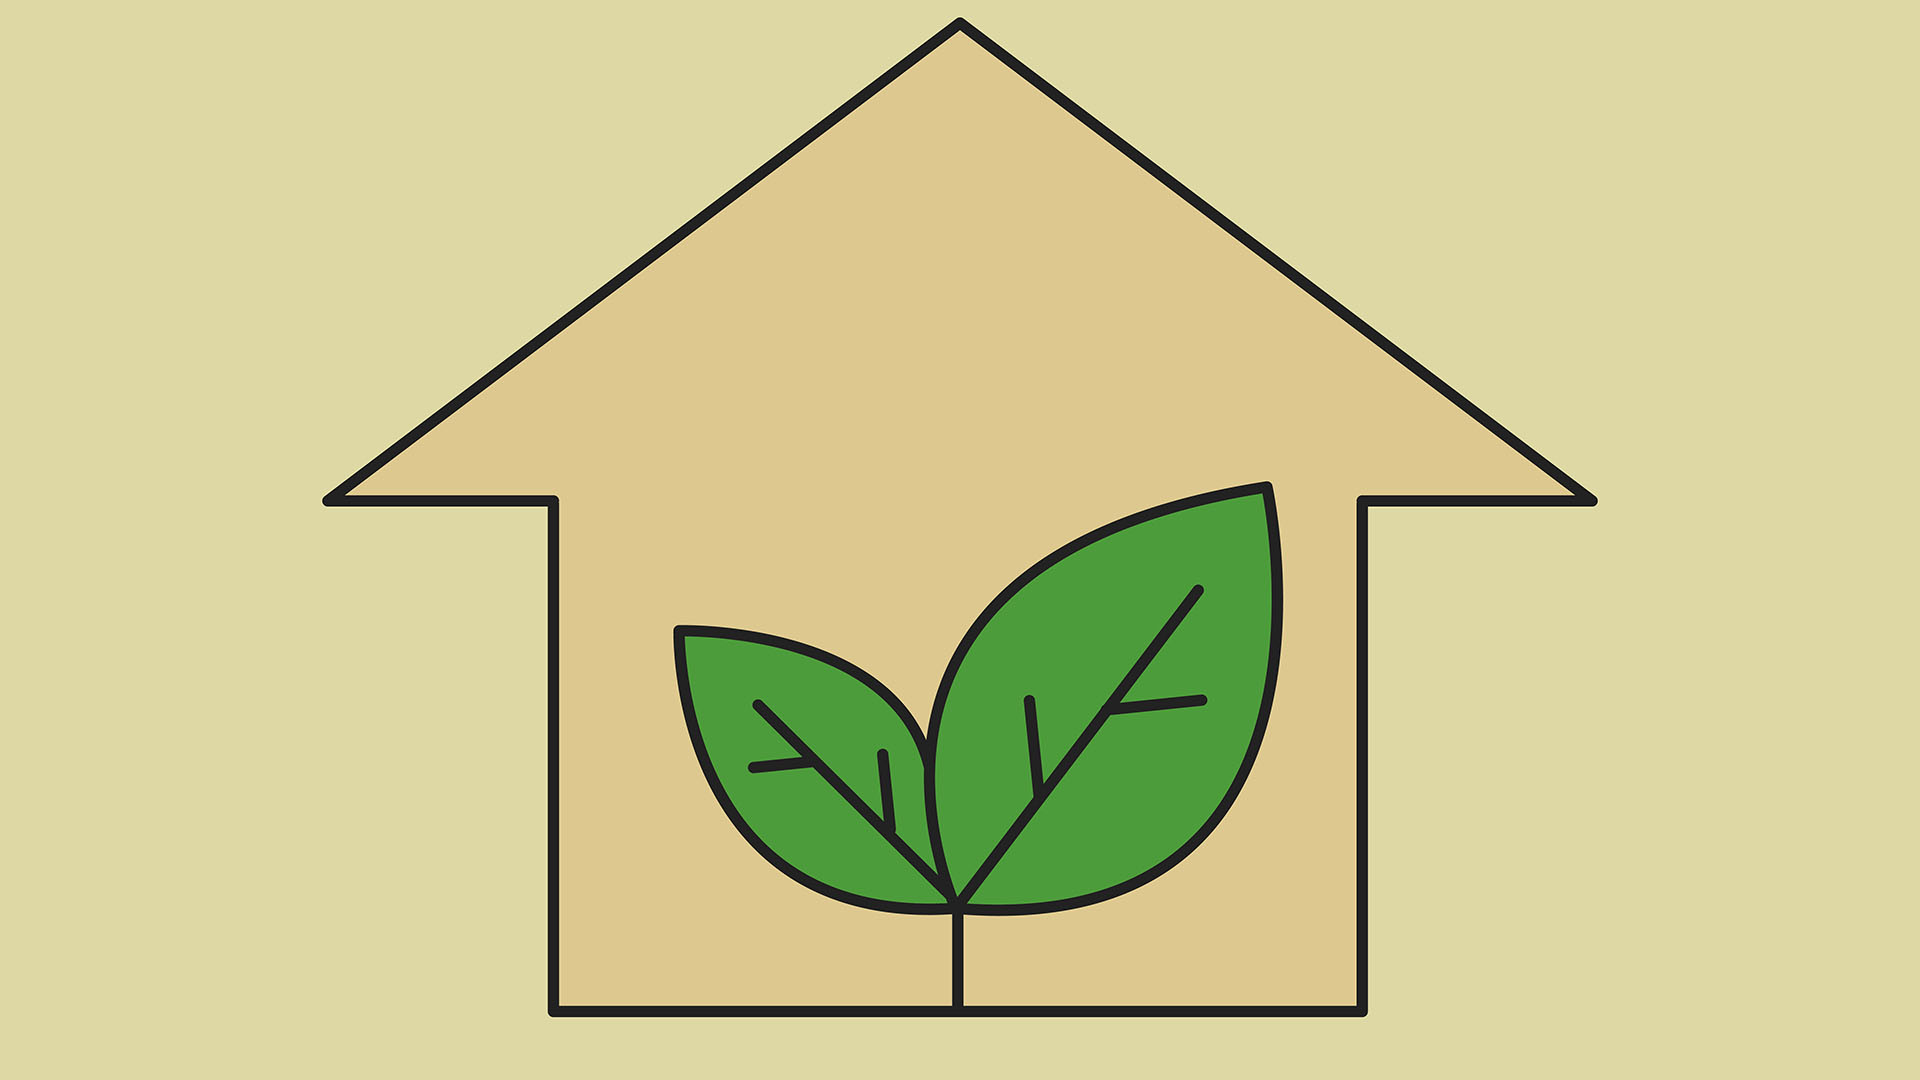 Il mutuo green può essere richiedibile per l'acquisto e costruzione di una casa ecologica oppure per ristrutturare la propria casa in un'ottica ecologica.